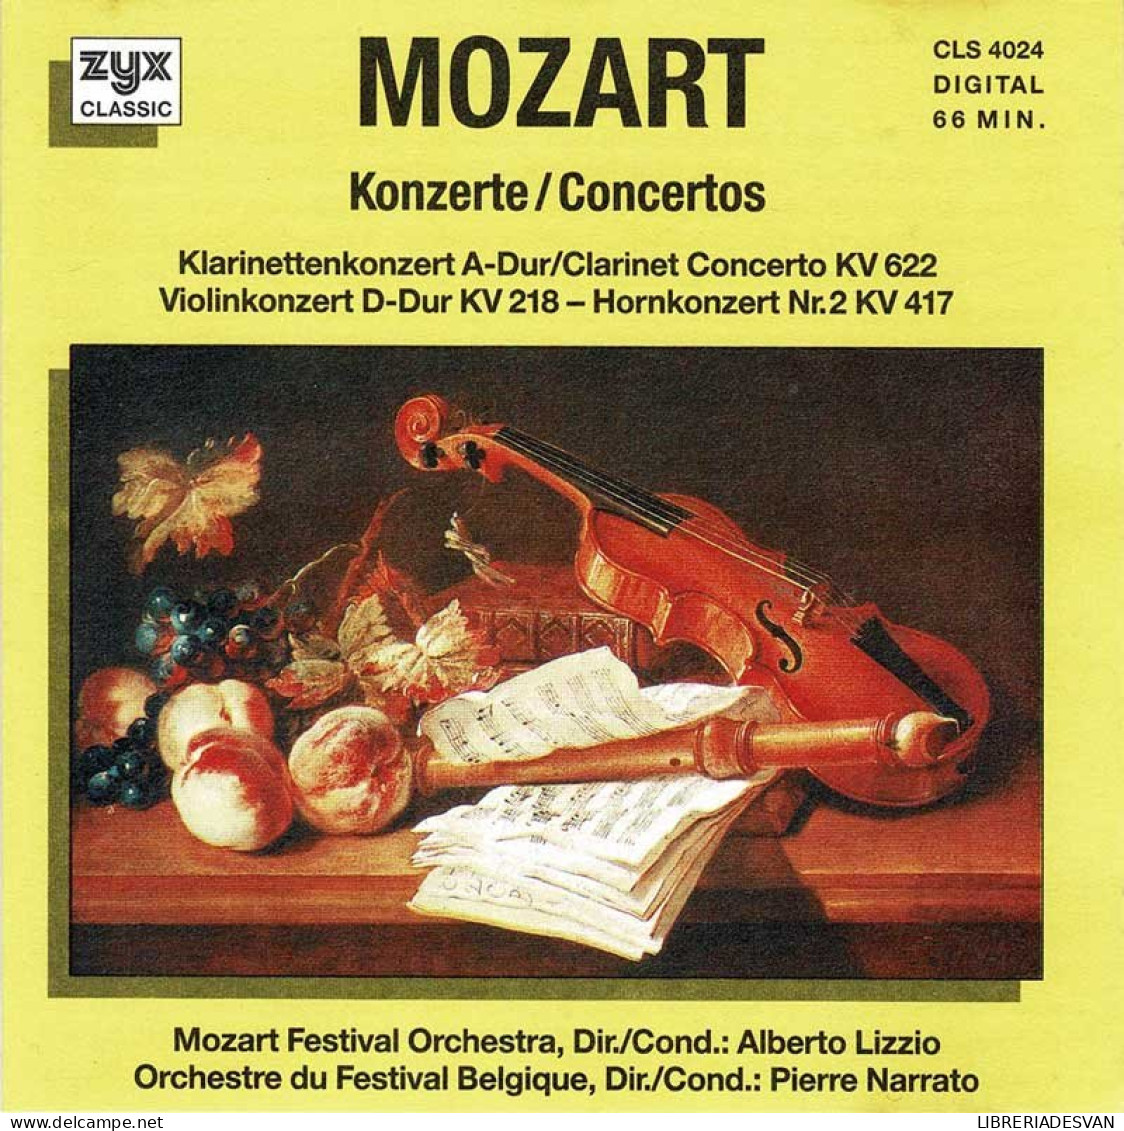 Mozart - Concertos. CD - Classical